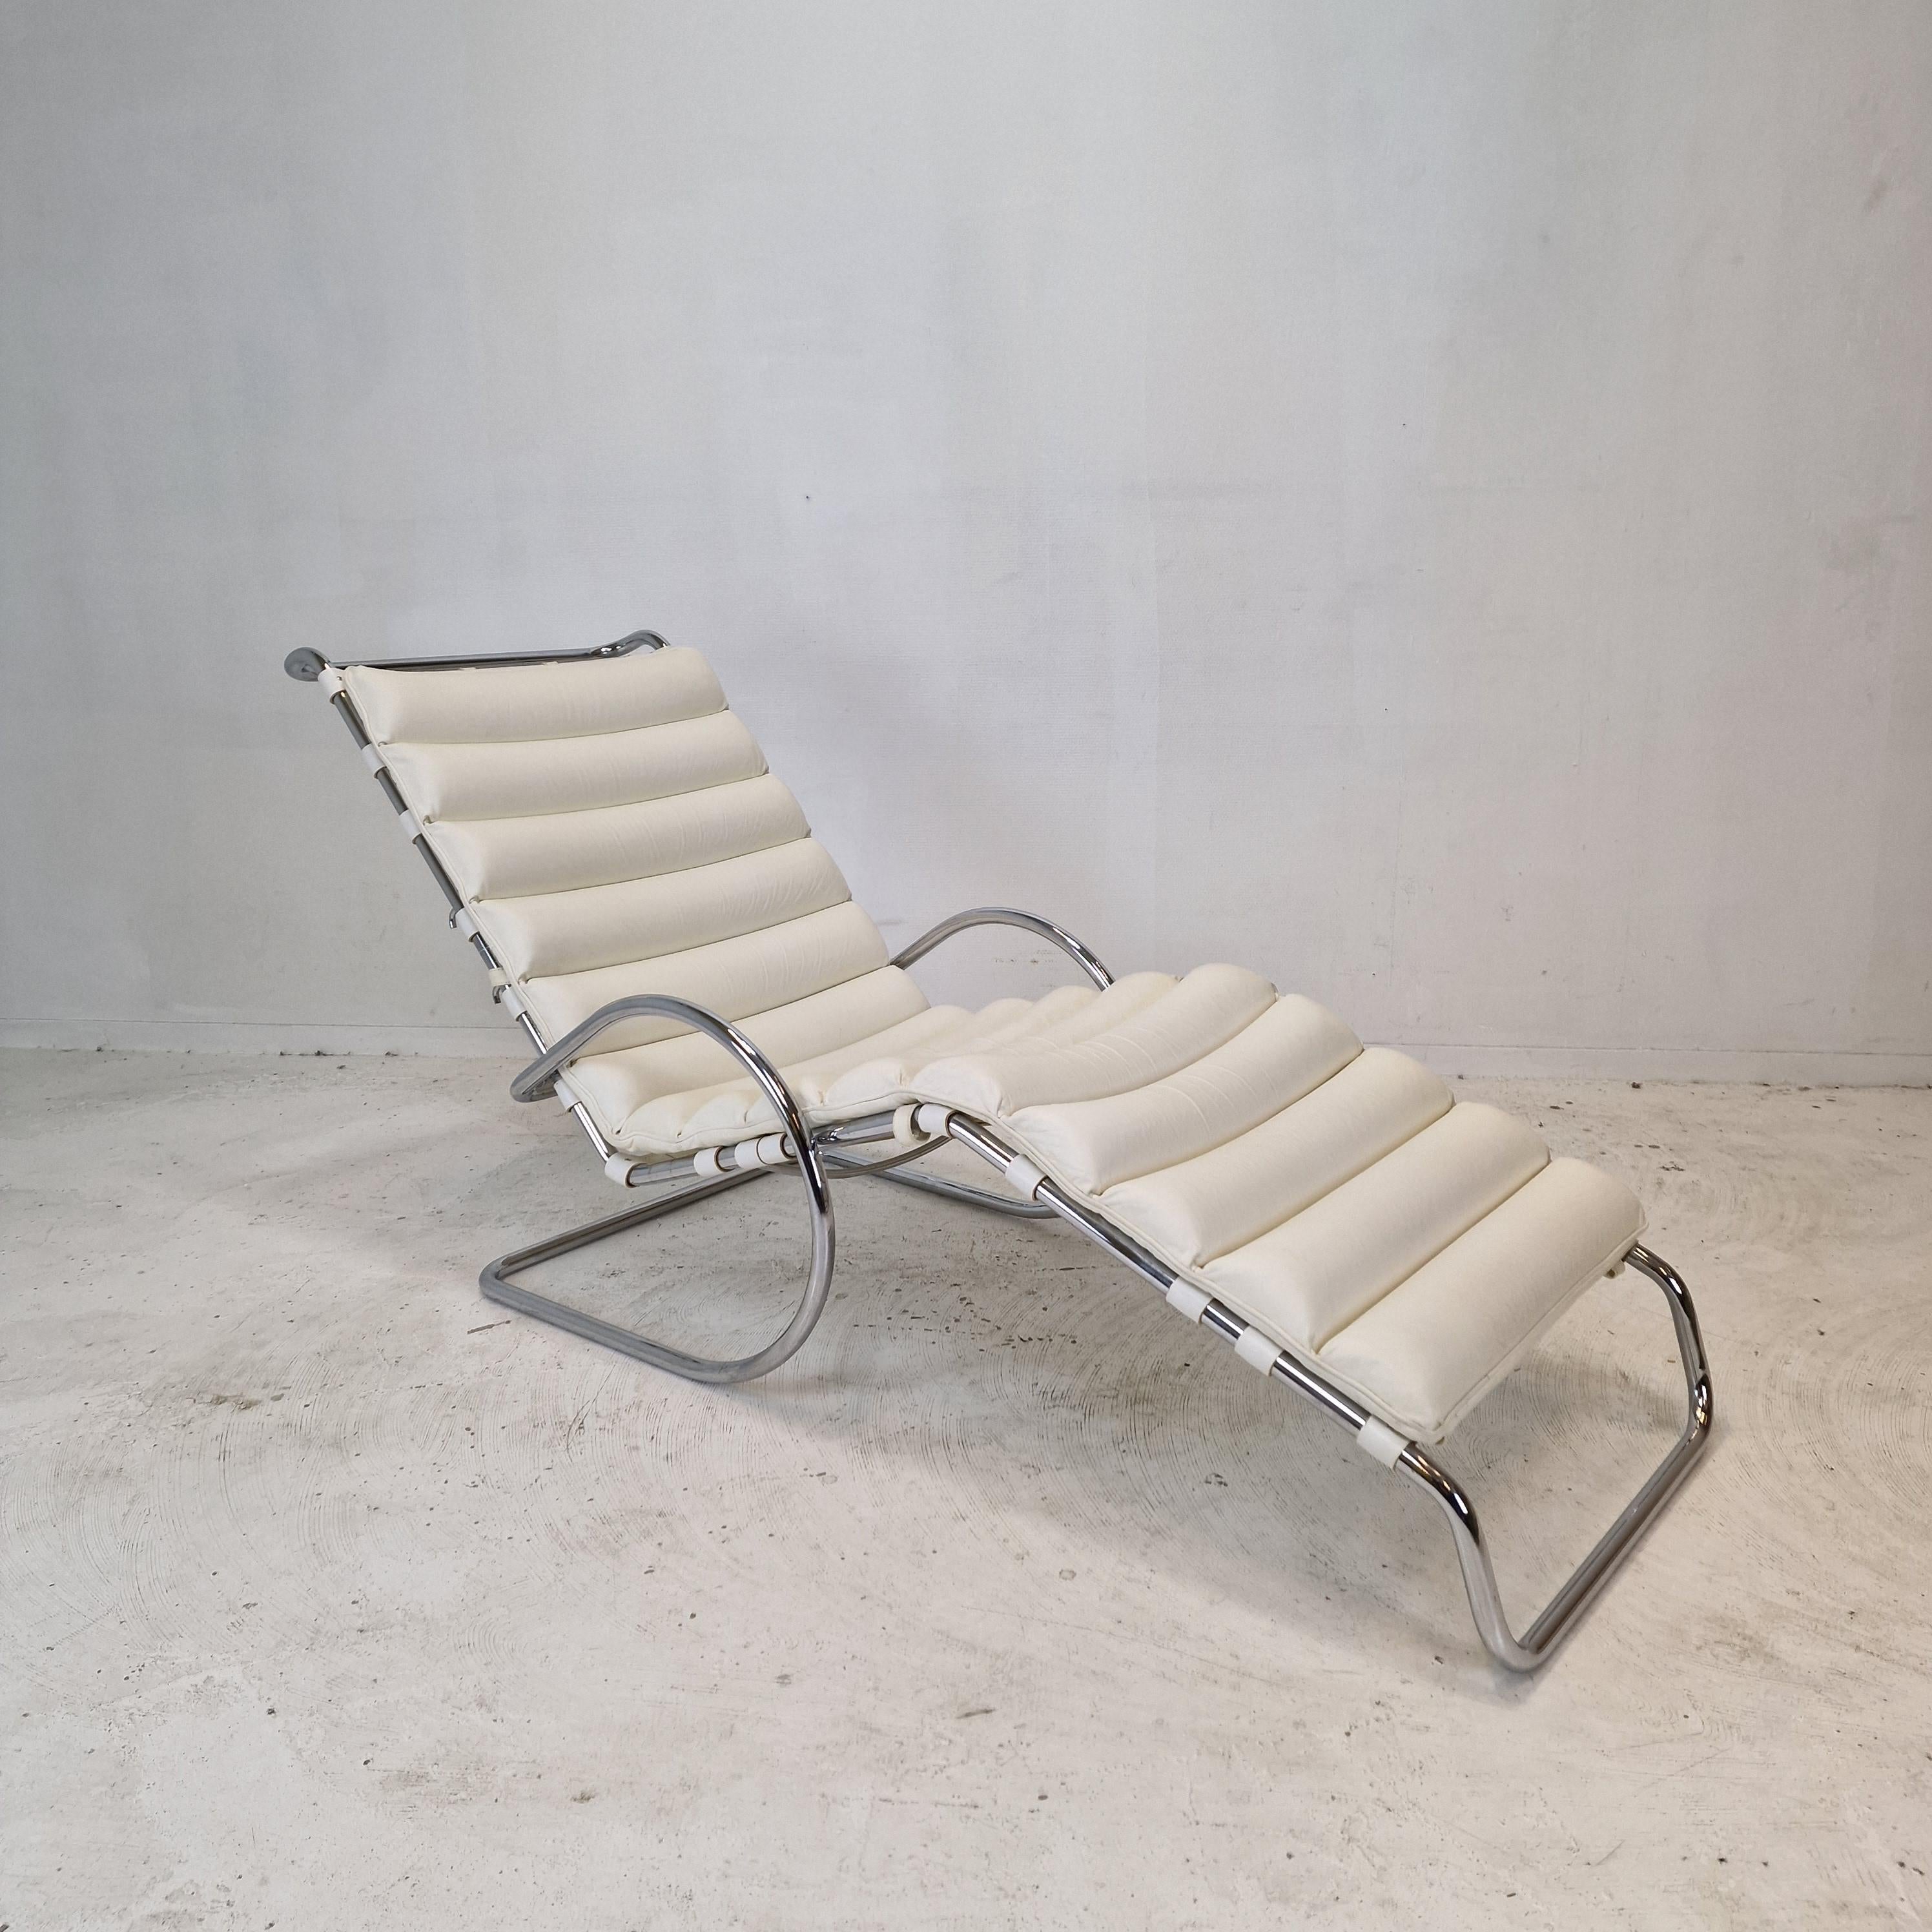 La chaise longue réglable modèle 242 MR a été conçue par Ludwig Mies van der Rohe en 1927. 
Cet exemple particulier a été produit en 1980 par Knoll International aux États-Unis. 

La chaise est dotée d'un coussin rembourré en cuir blanc de haute